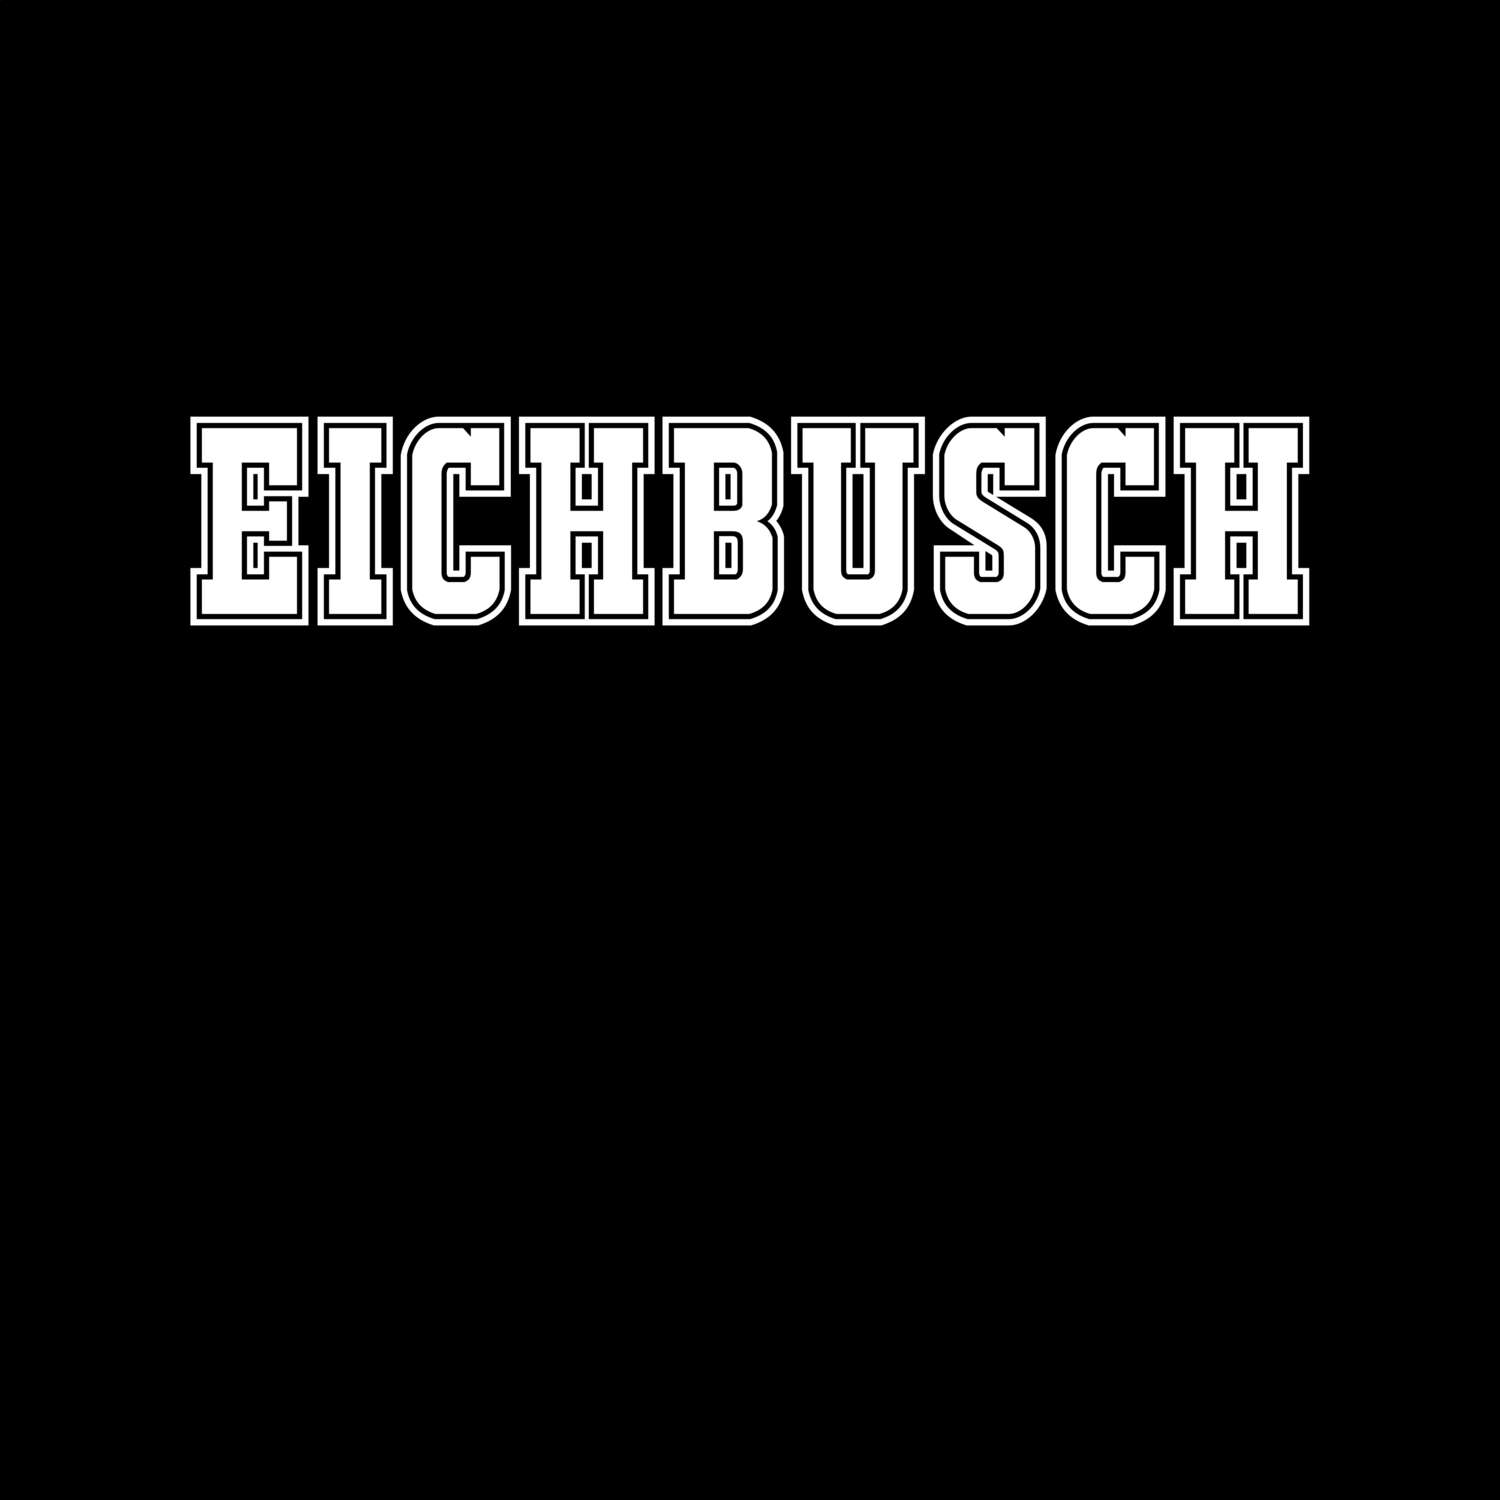 Eichbusch T-Shirt »Classic«